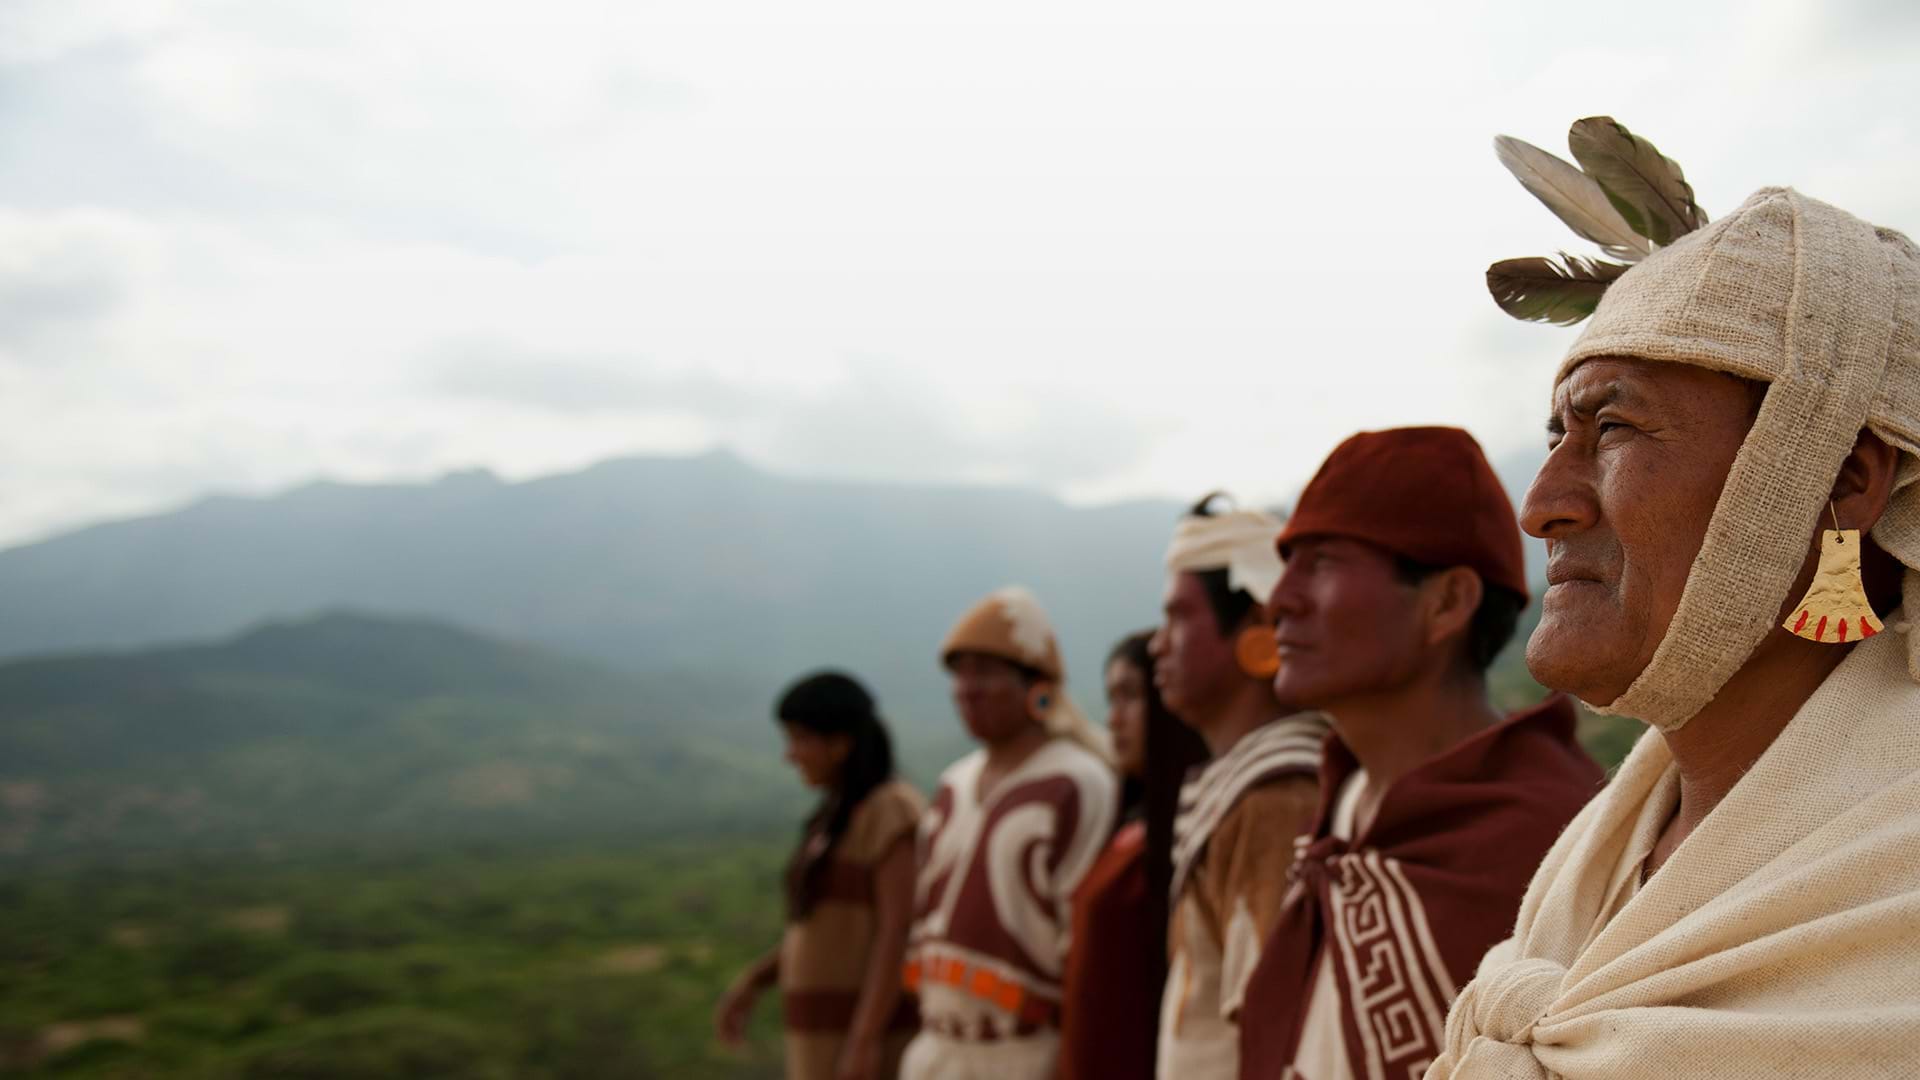 Escenificación de la cultura Moche, Distrito de Chiclayo